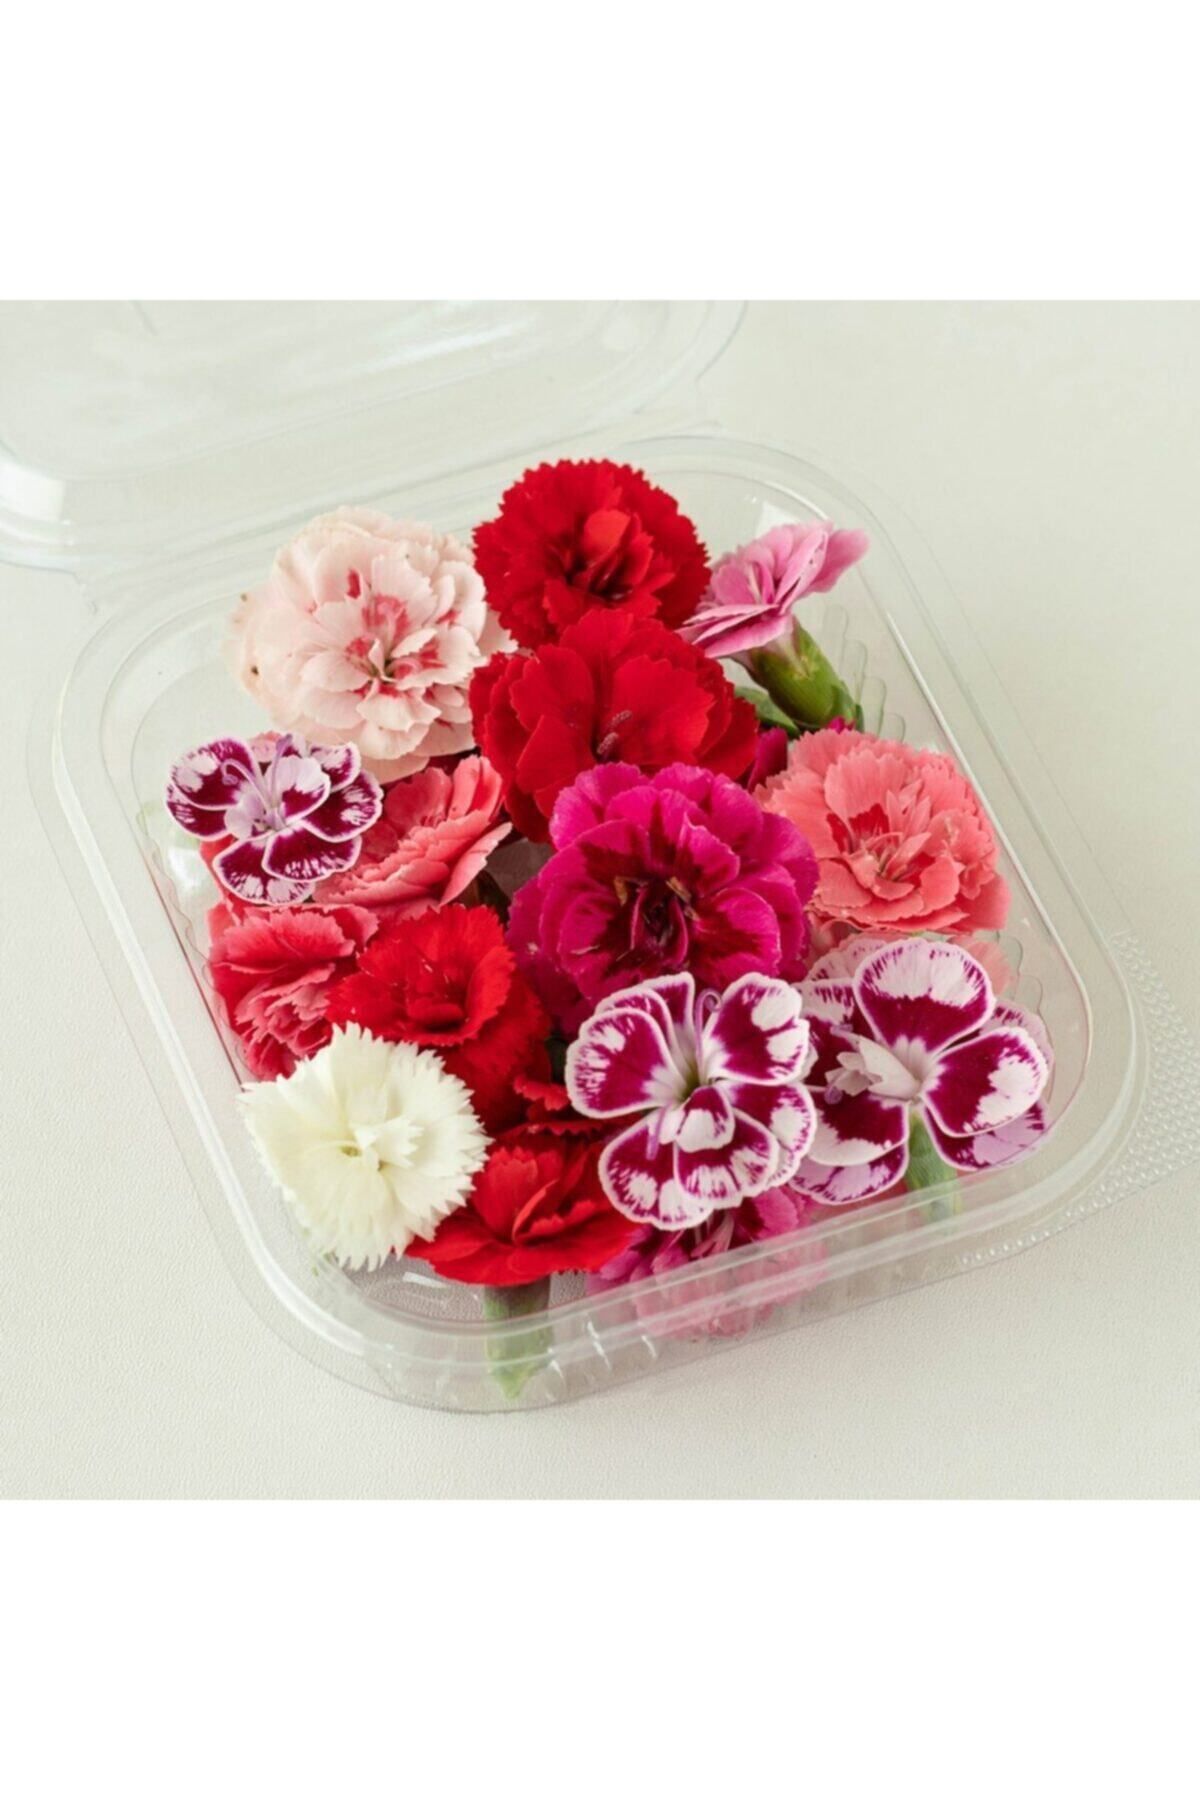 Mimi Çiftliği Yenilebilir Çiçek Karanfil (20 Adet Çiçek)